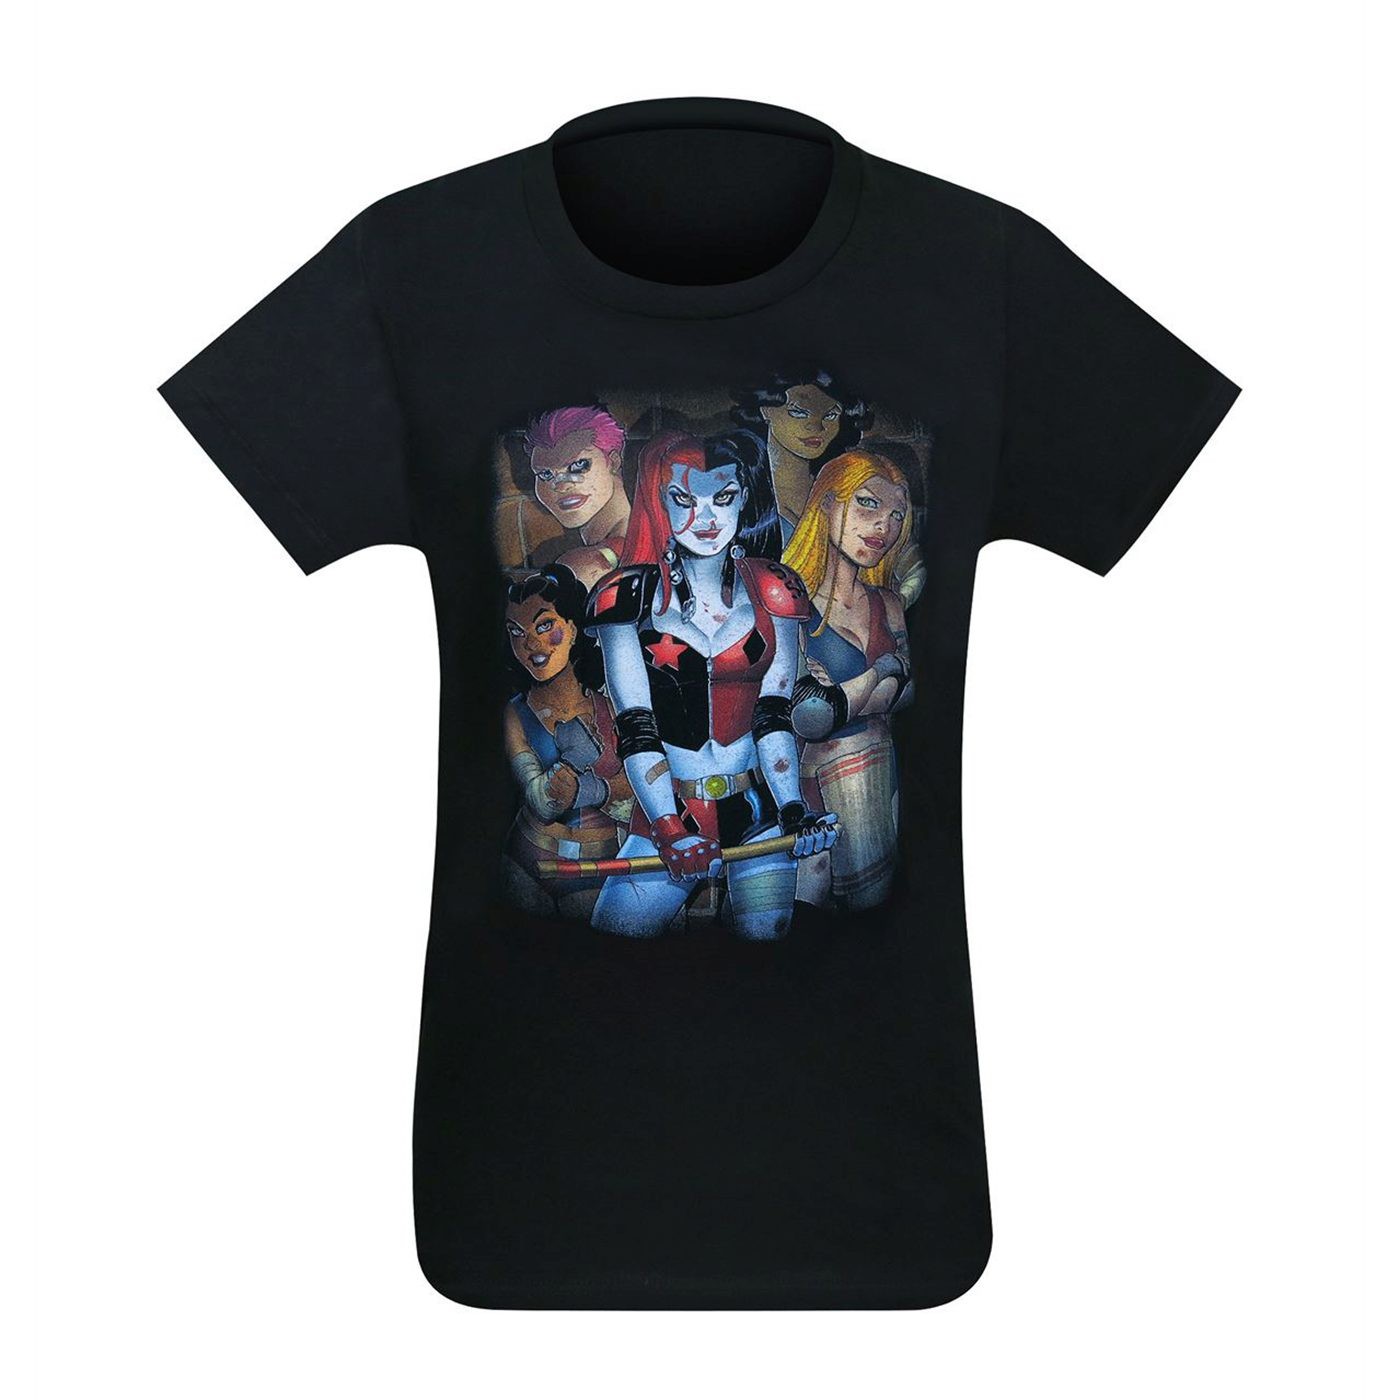 DC Bad Girls Women's T-Shirt